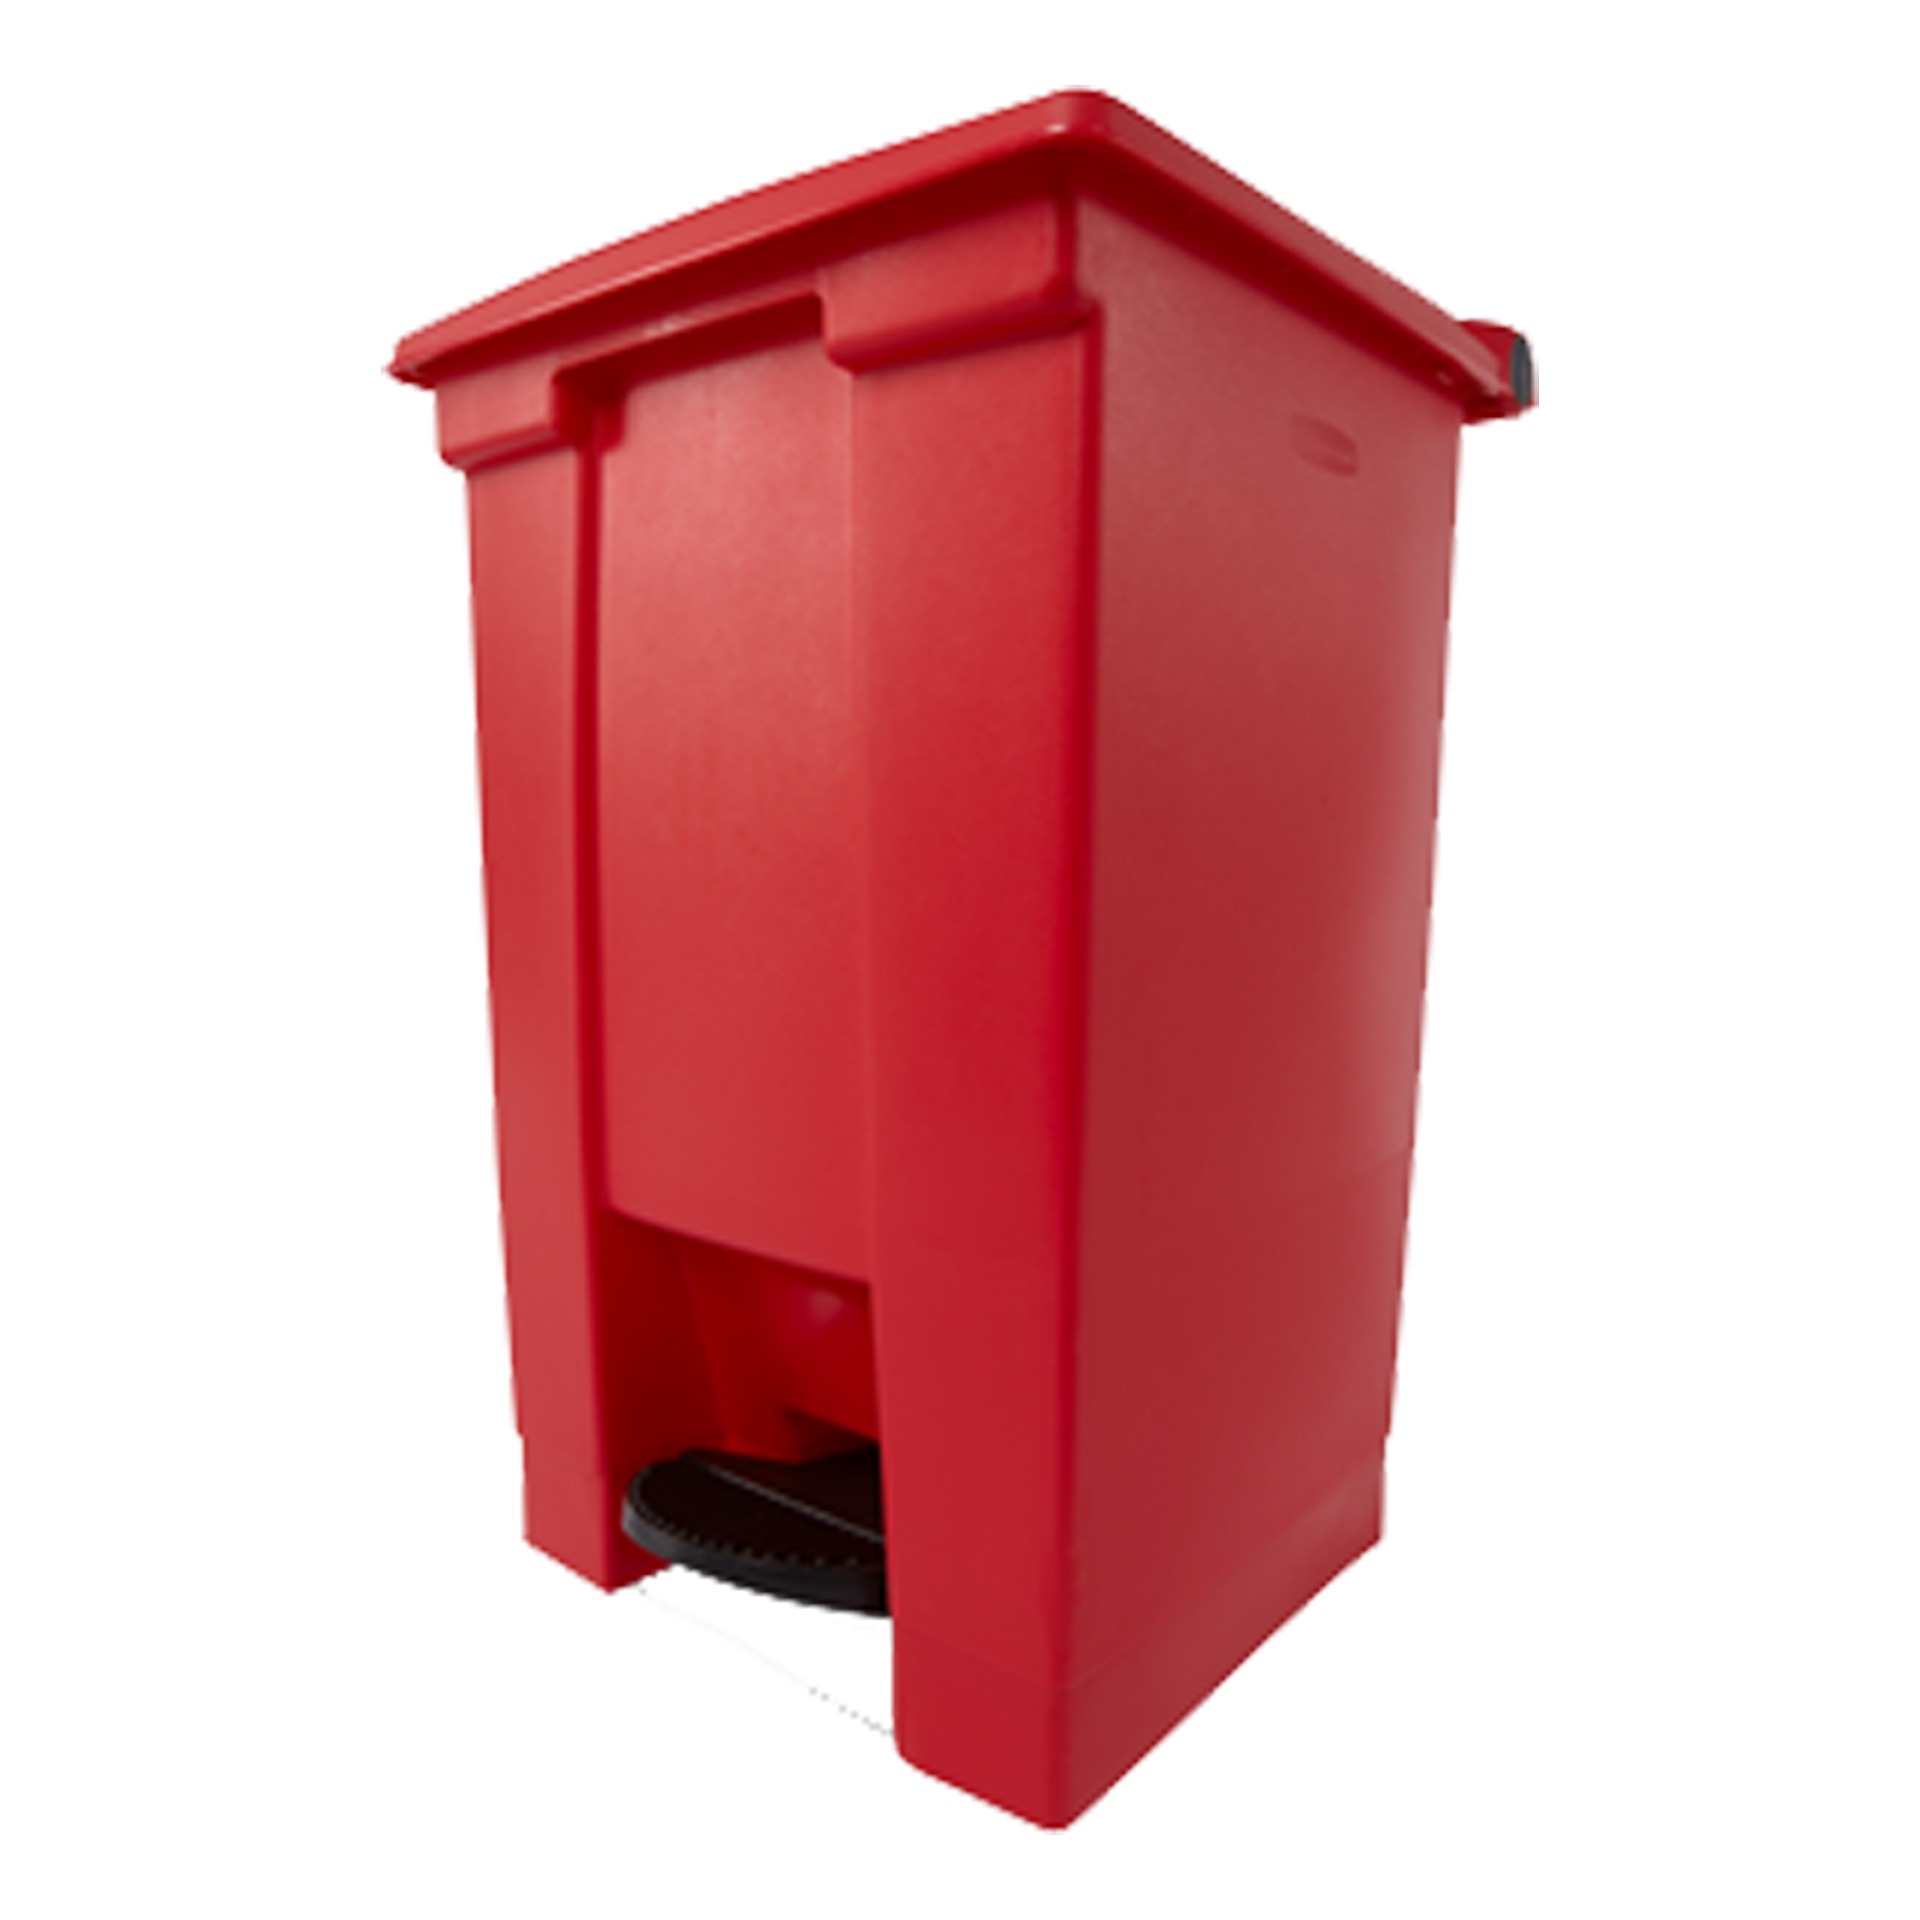 ถังขยะแบบเท้าเหยียบ Legacy Step-On Container ขนาด 45.42 ลิตร สีแดง